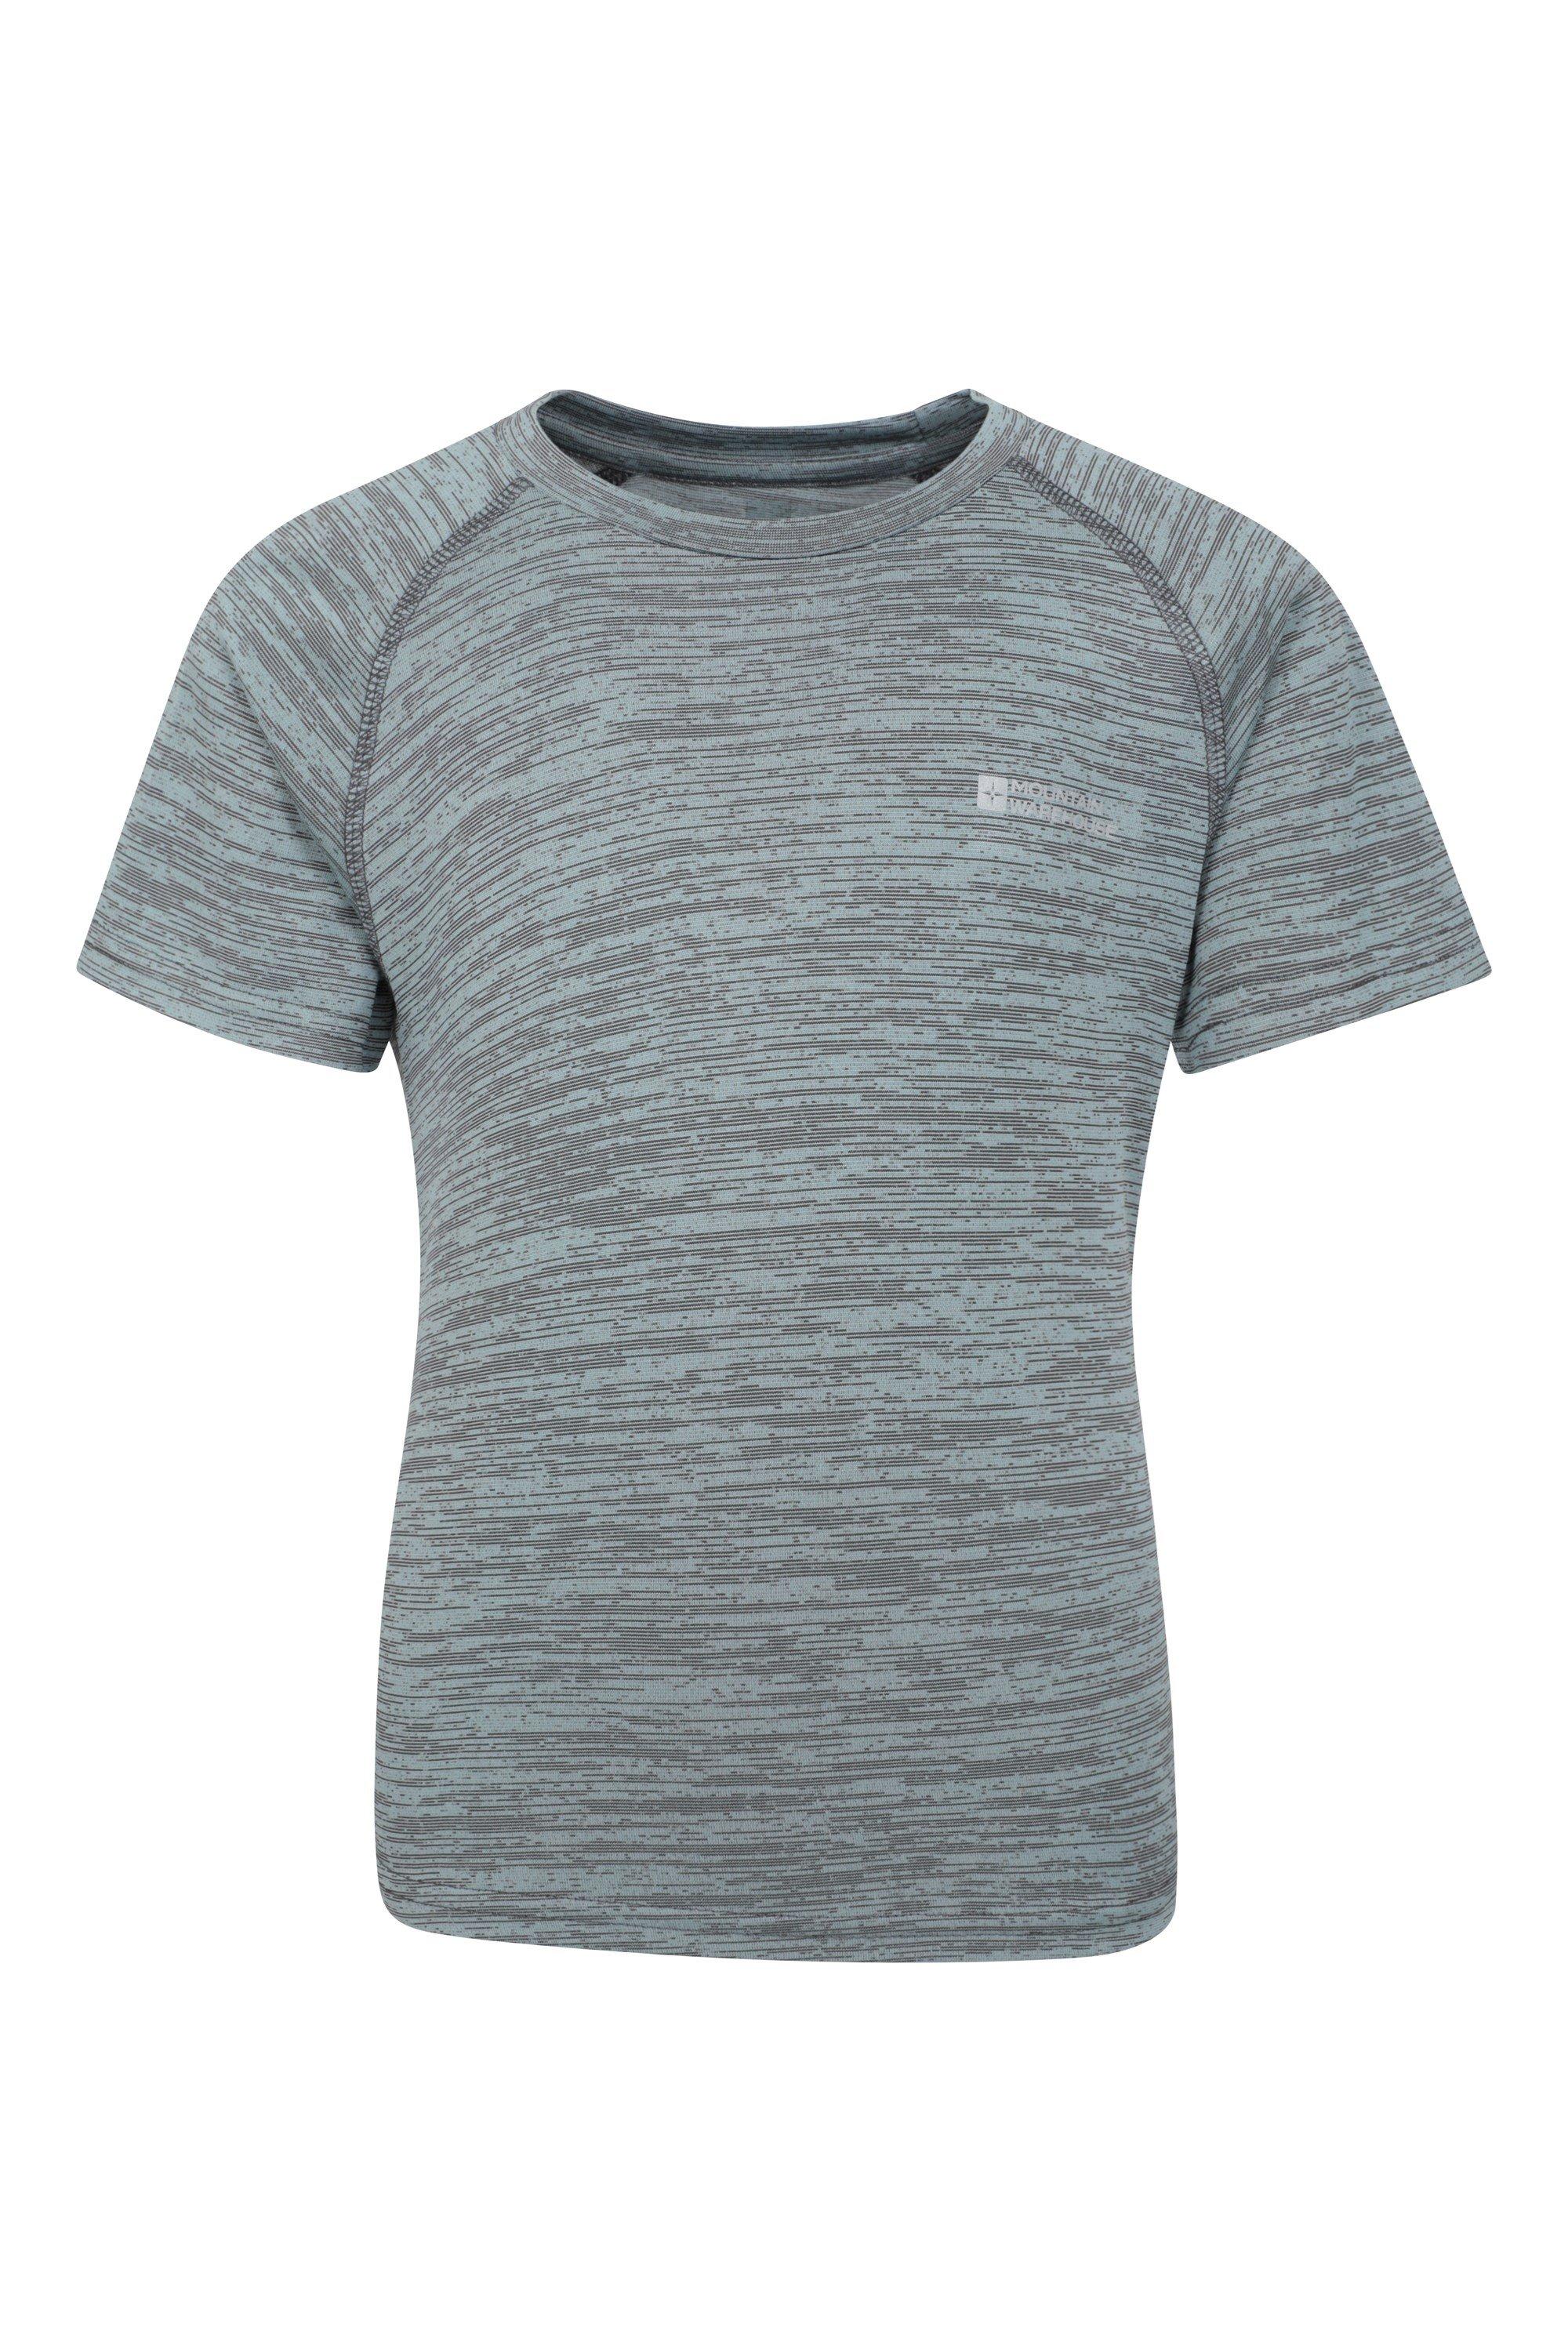 Простая полевая футболка Быстросохнущая футболка с высоким уровнем впитывания влаги на каждый день Mountain Warehouse, серый